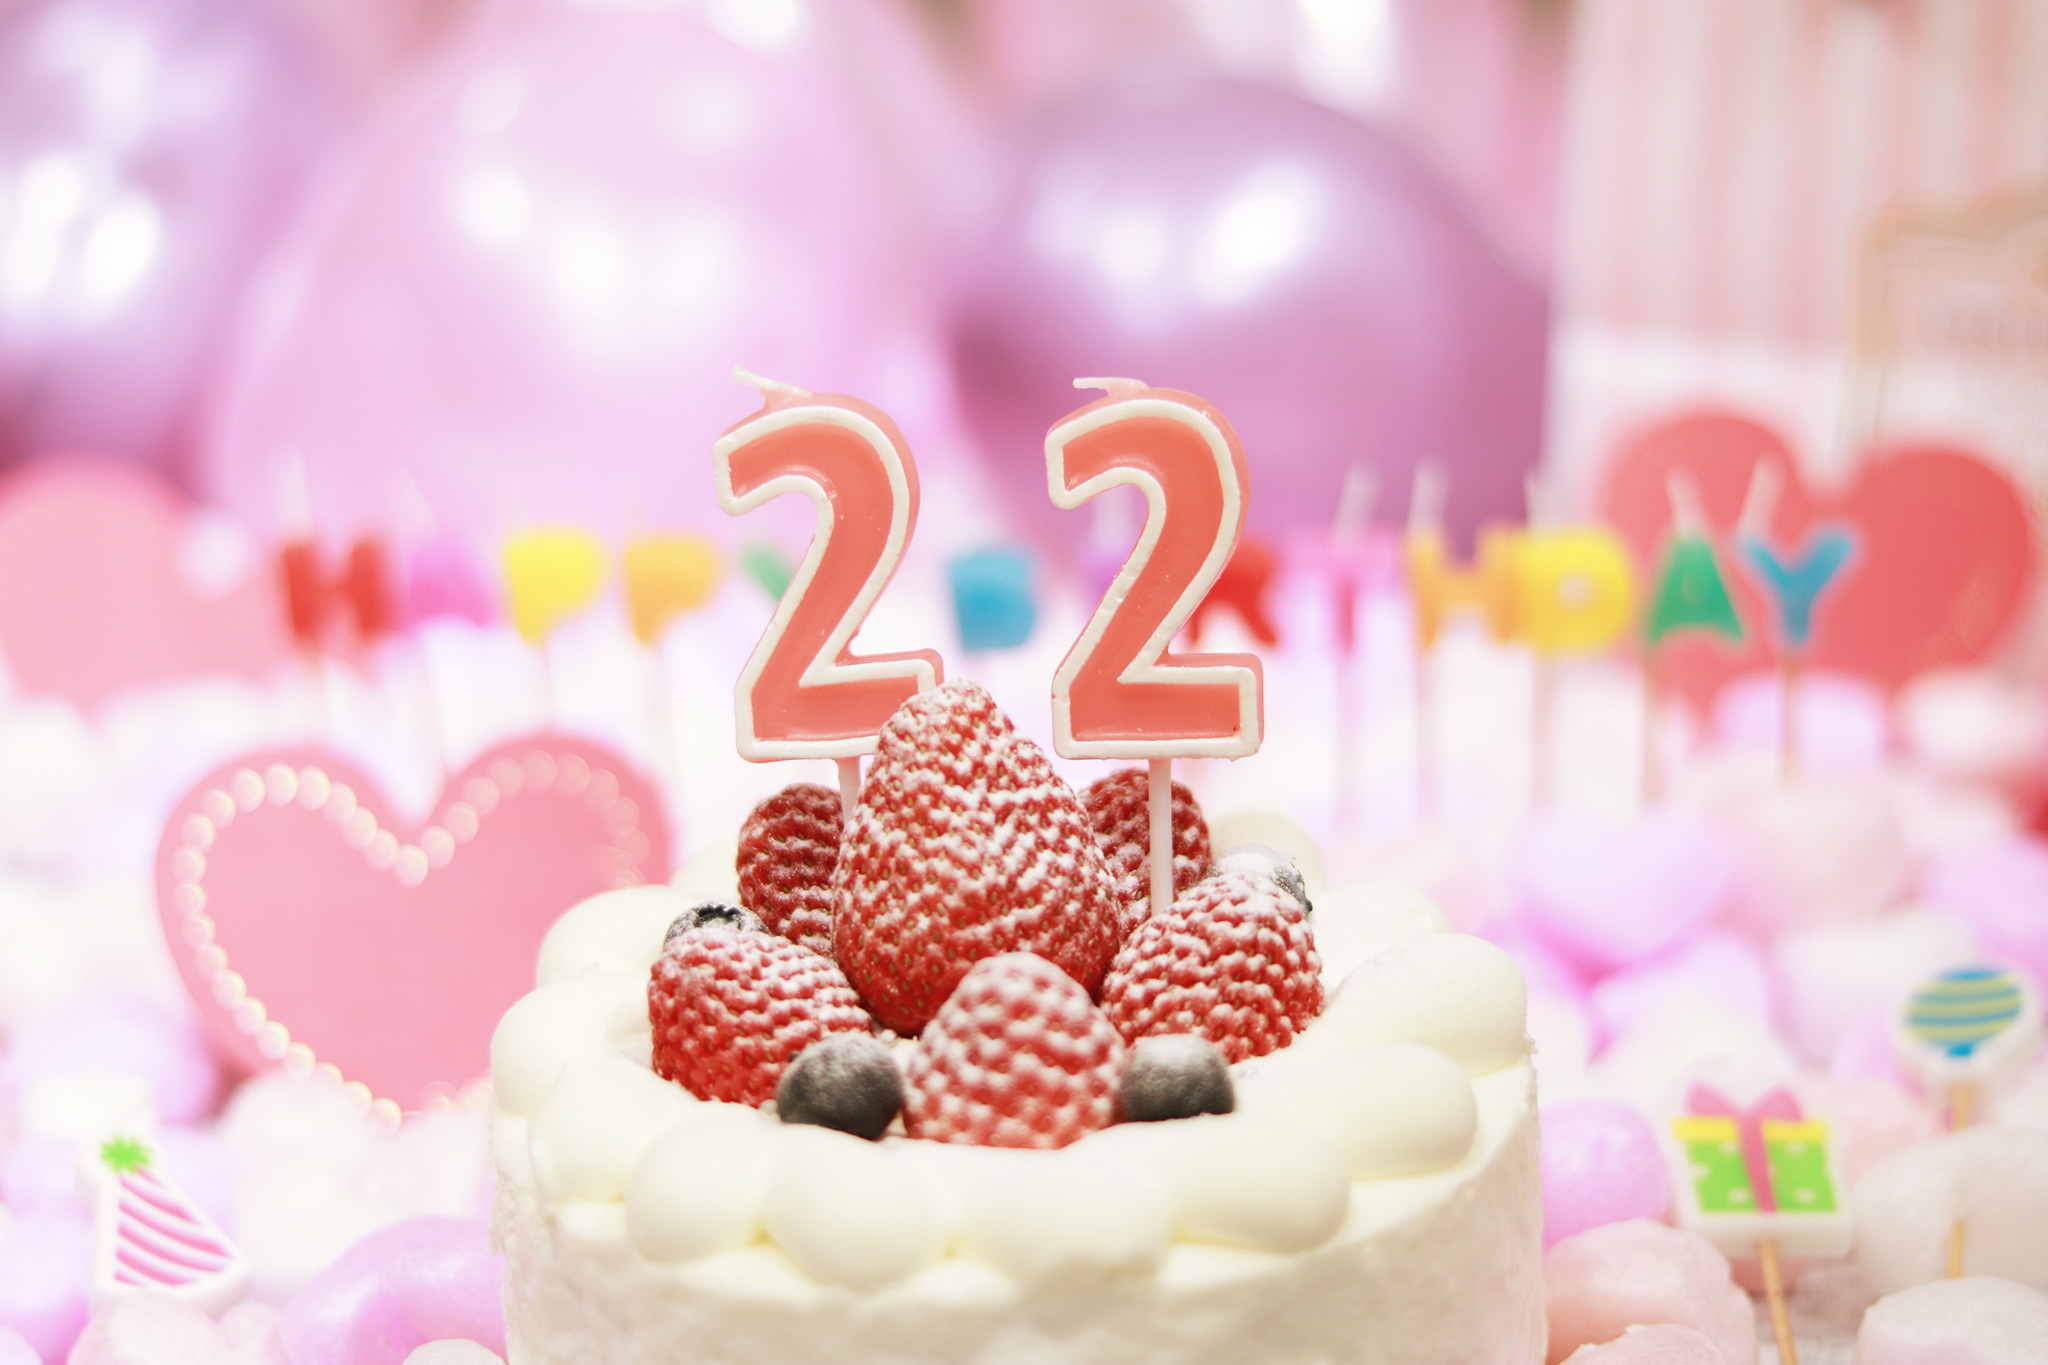 オシャレな誕生日画像 可愛いケーキとキャンドルでお祝い 22歳編 のフリー画像 おしゃれなフリー写真素材 Girly Drop